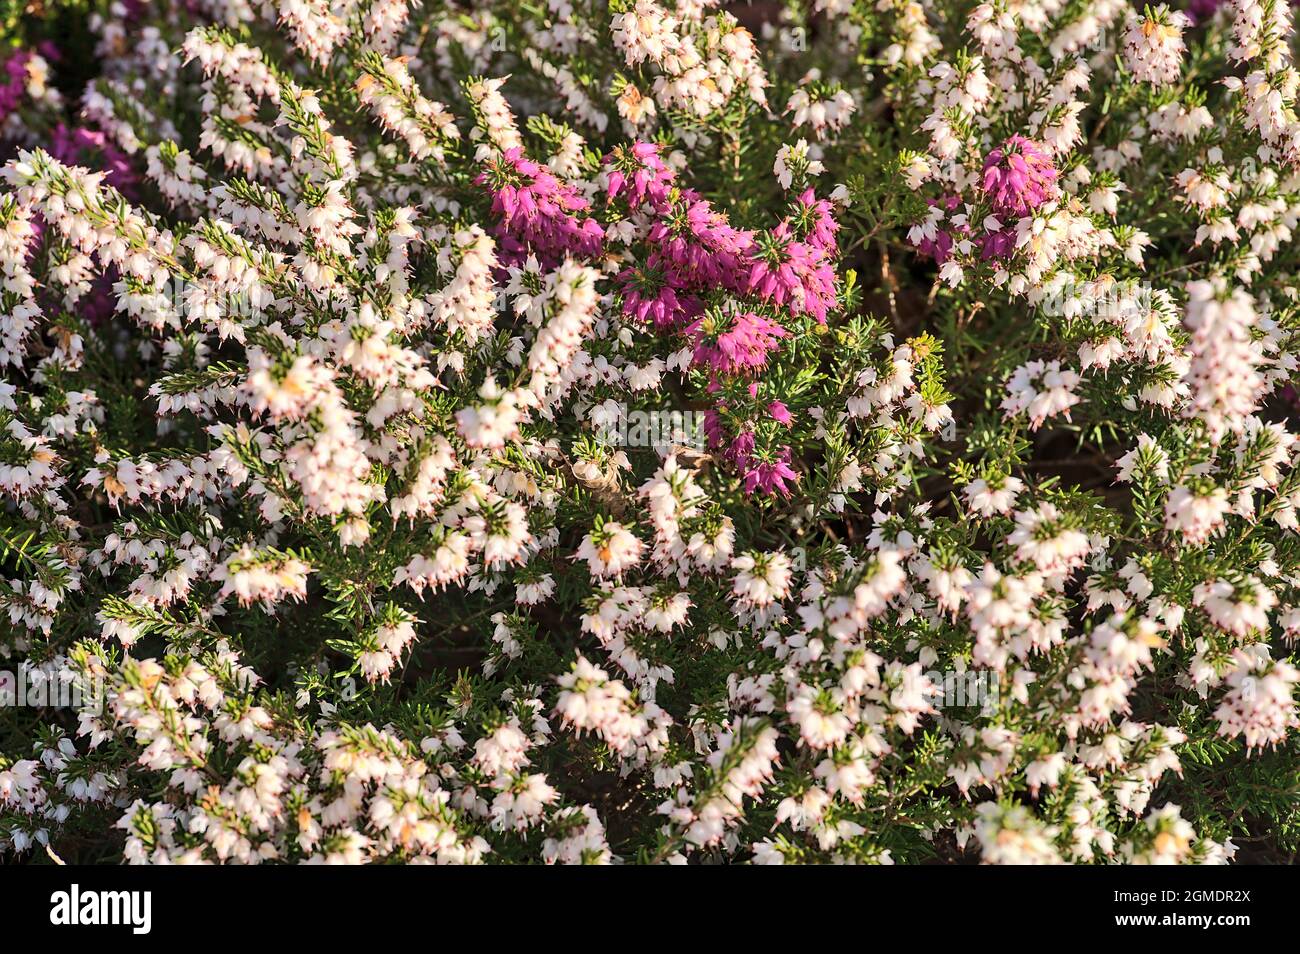 Magnifique fond de printemps de fleurs de bruyère blanches et violettes méditerranéennes (Erica Arborea) avec feuillage vert ressemblant à des aiguilles qui pousse et fleurit Banque D'Images